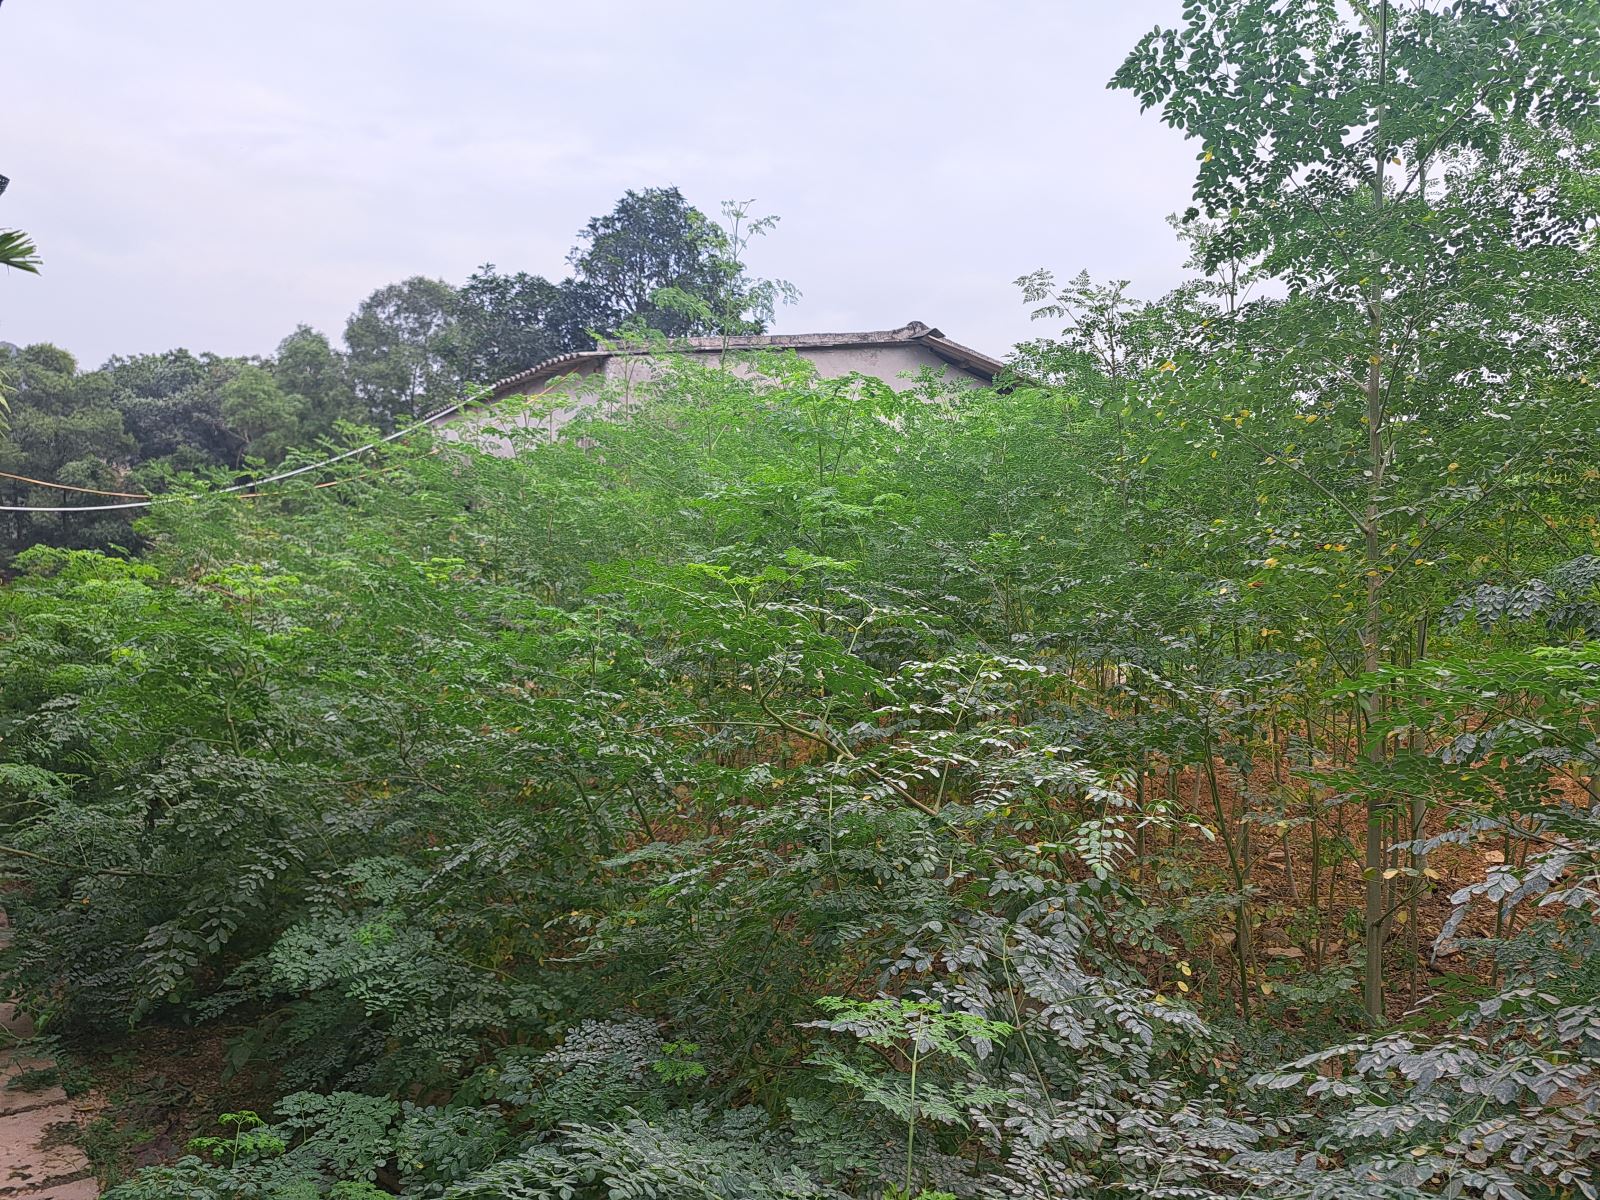 Cây chùm ngây, một trong những thảo mộc trong vườn được sử dụng làm thức ăn nuôi gà